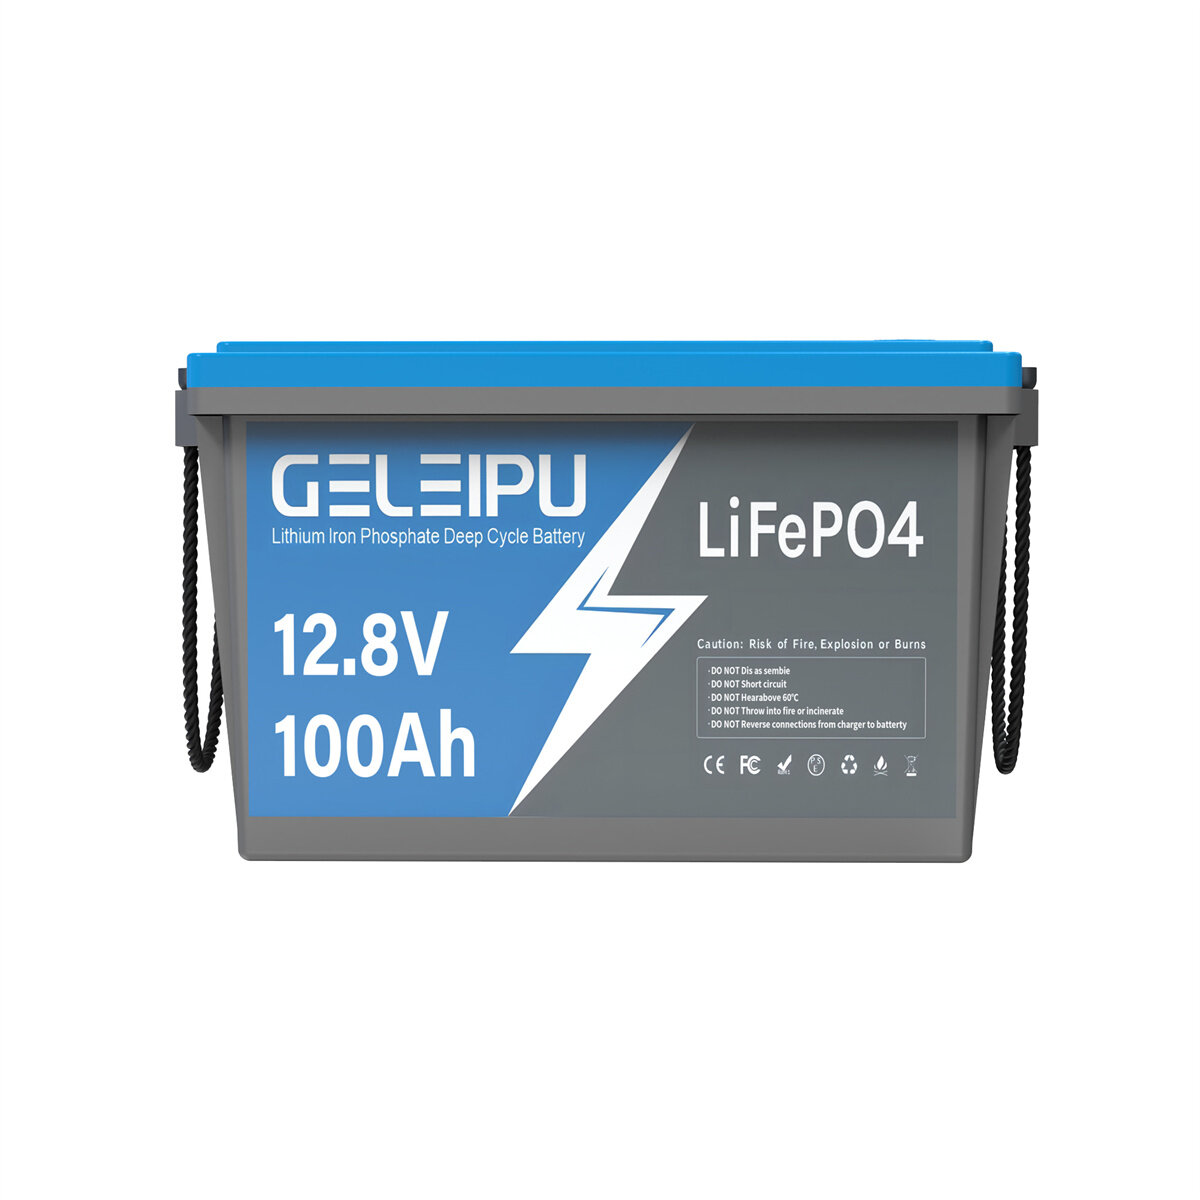 [EU Direct] GELEIPU 12V 12.8V 100Ah LiFePO4 аккумулятор, 1280Wh перезаряжаемый литий-ионный аккумулятор встроенный 100A BMS, с 4000-15000 циклами, отлично подходит для траншейного двигателя и солнечной системы